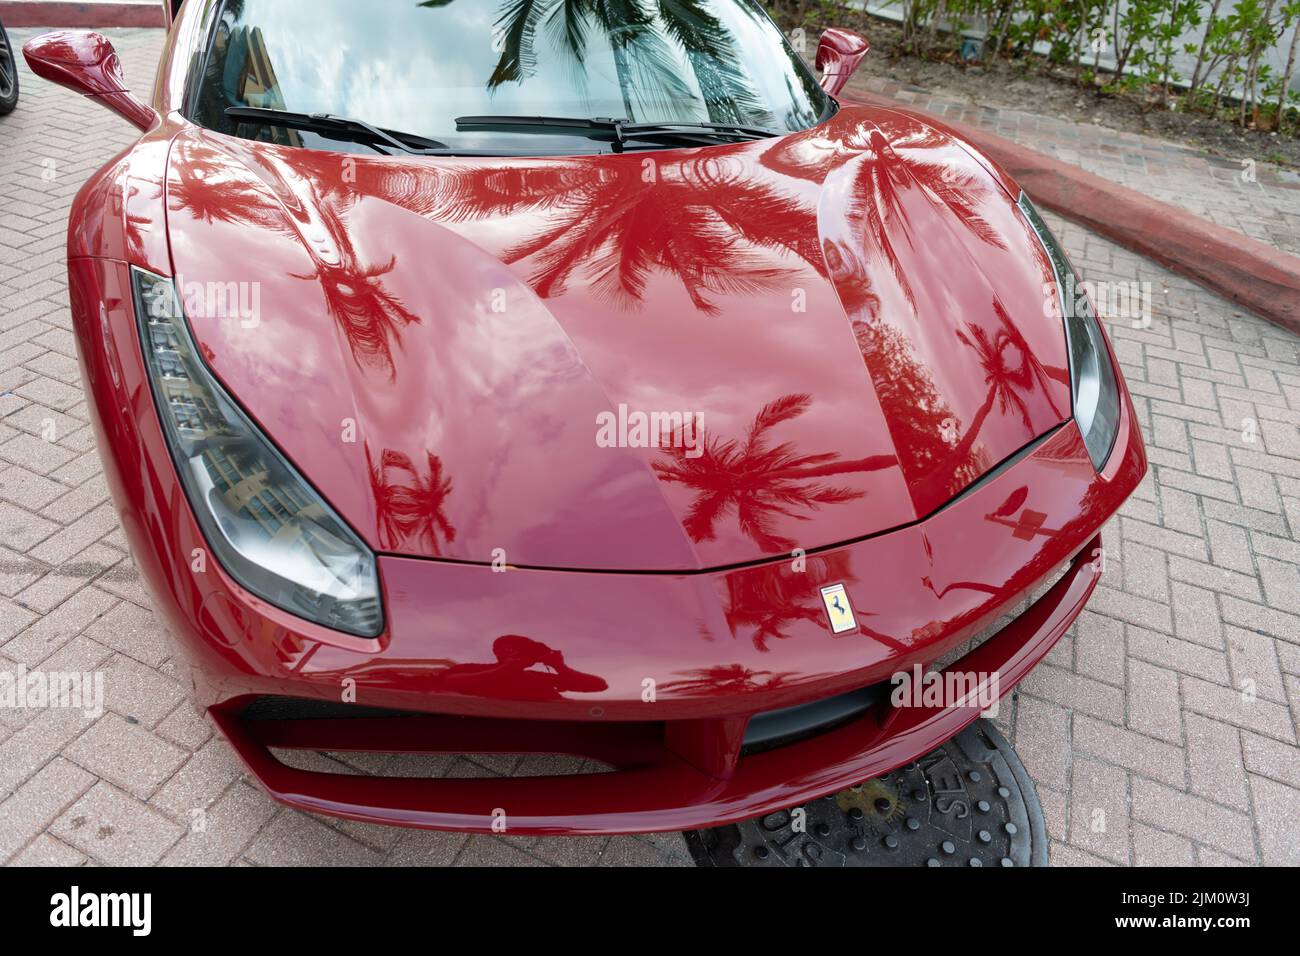 Miami Beach, Florida USA - April 18, 2021: red Ferrari 488 GTB, top view Stock Photo